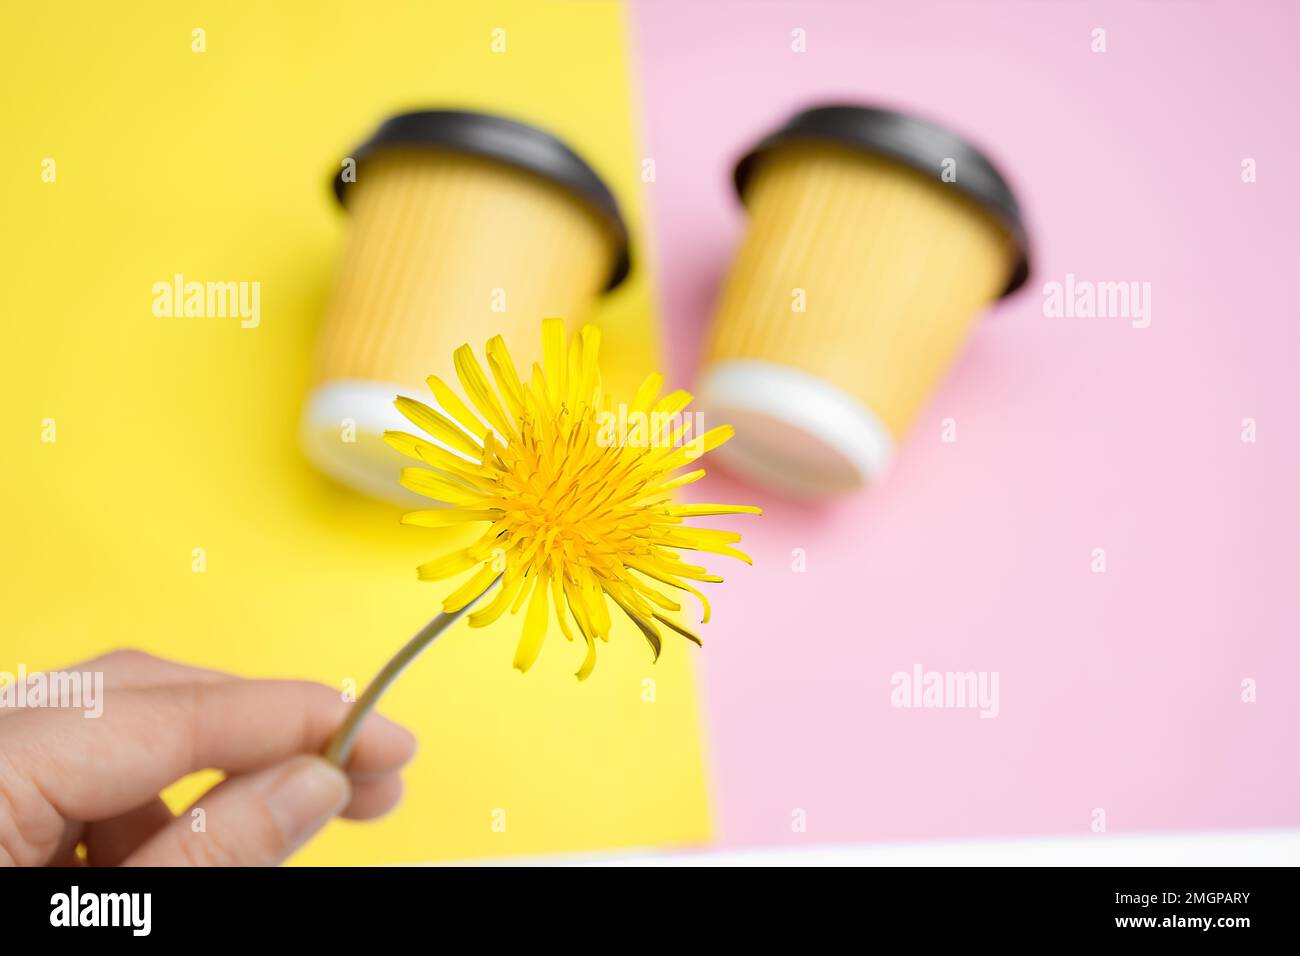 Belle fleur de pissenlit à la main de la fille sur fond deux tasses jaunes de café ou de thé à emporter se trouvent dans le désordre créatif sur la table de design colorée. Fond orange et rose. Copier l'espace pour le texte Banque D'Images